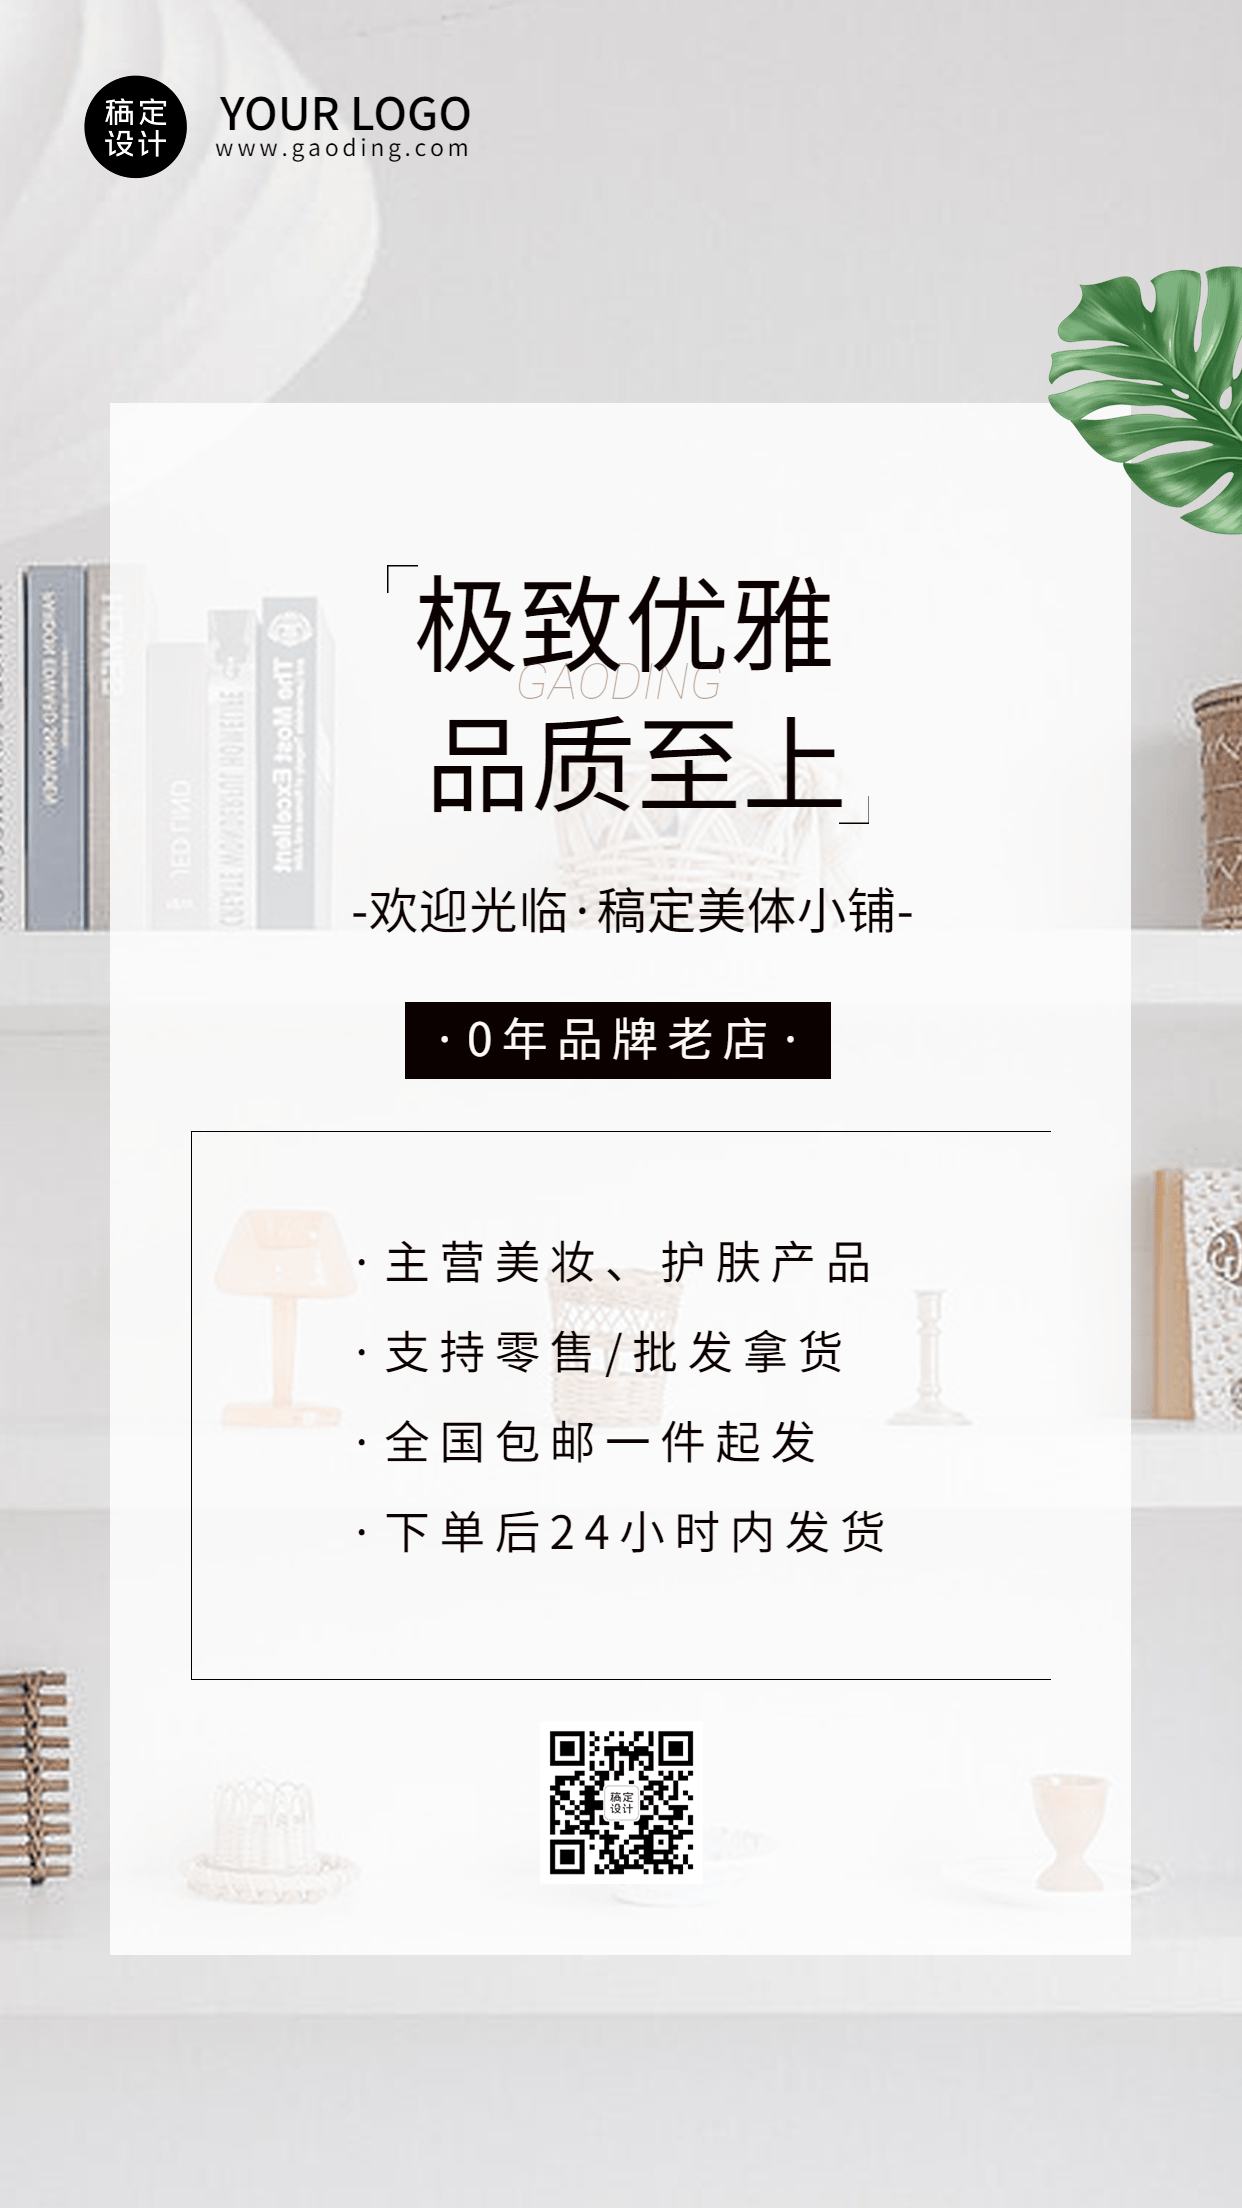 商品零售店铺介绍宣传INS文艺风手机海报